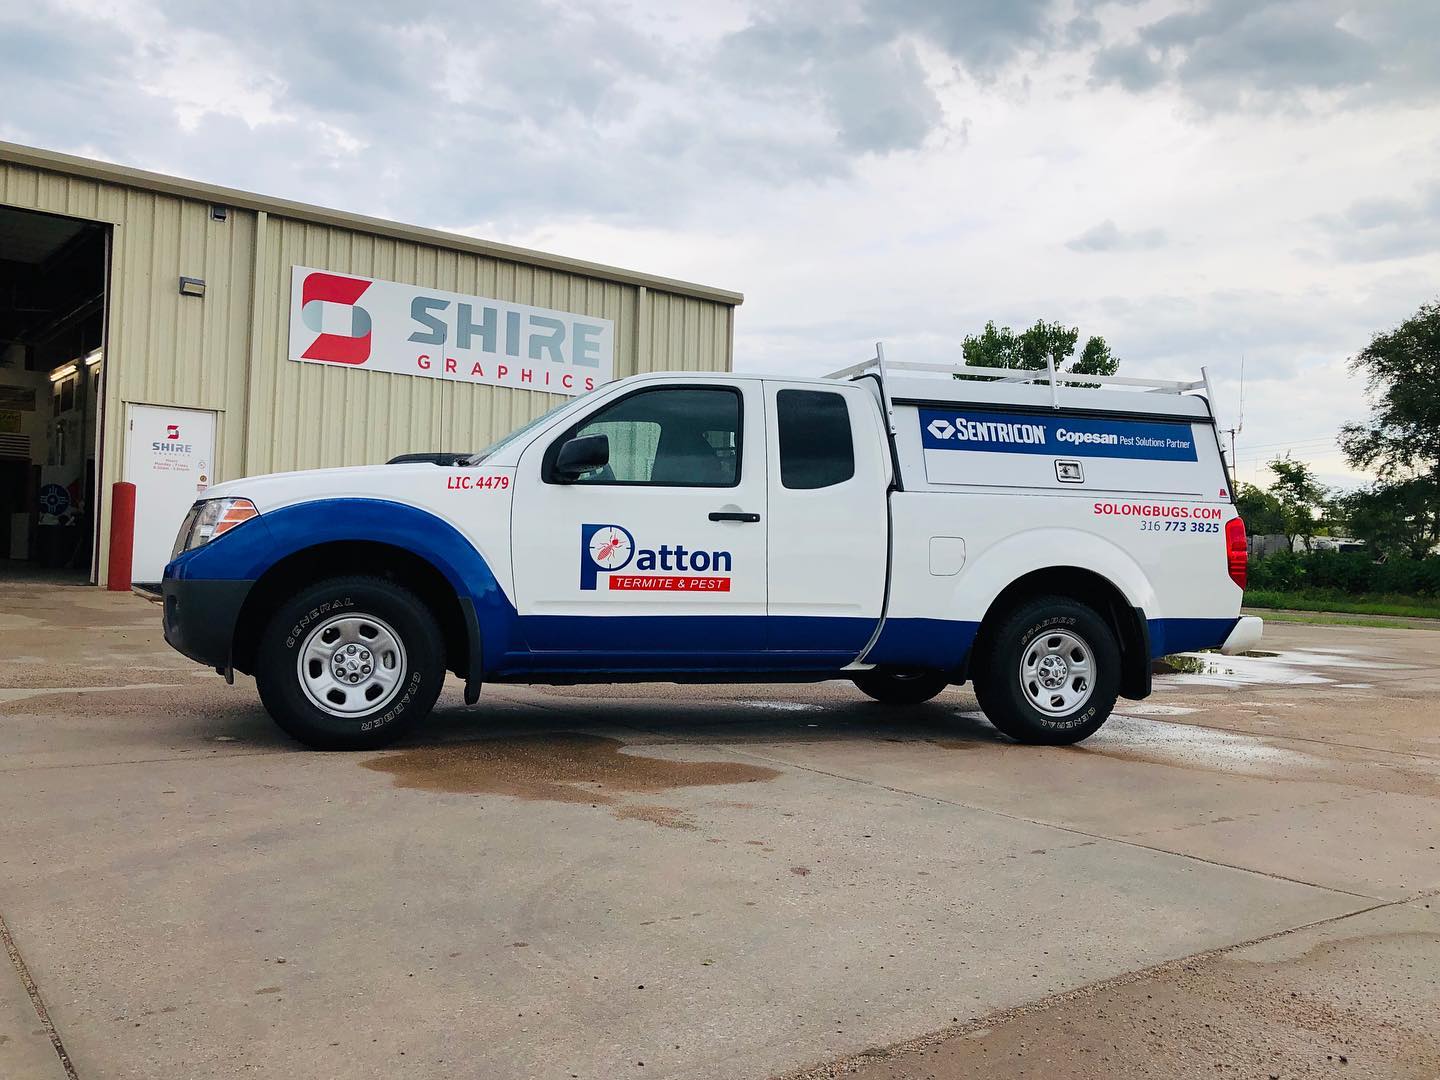 Patton Wichita truck